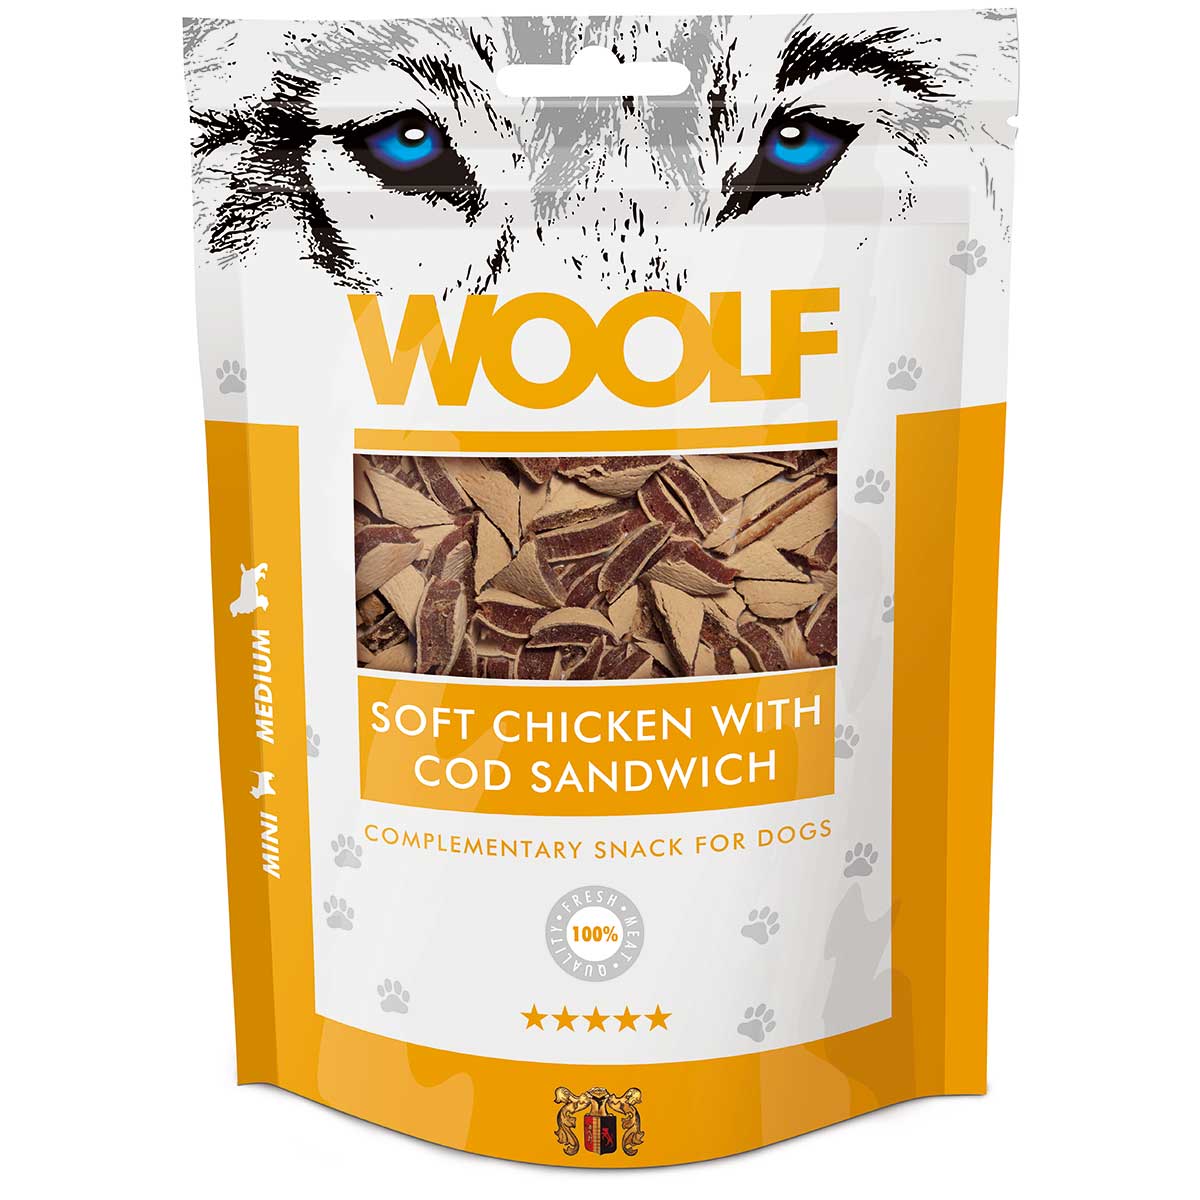 Woolf Dog treat chicken and cod sandwich